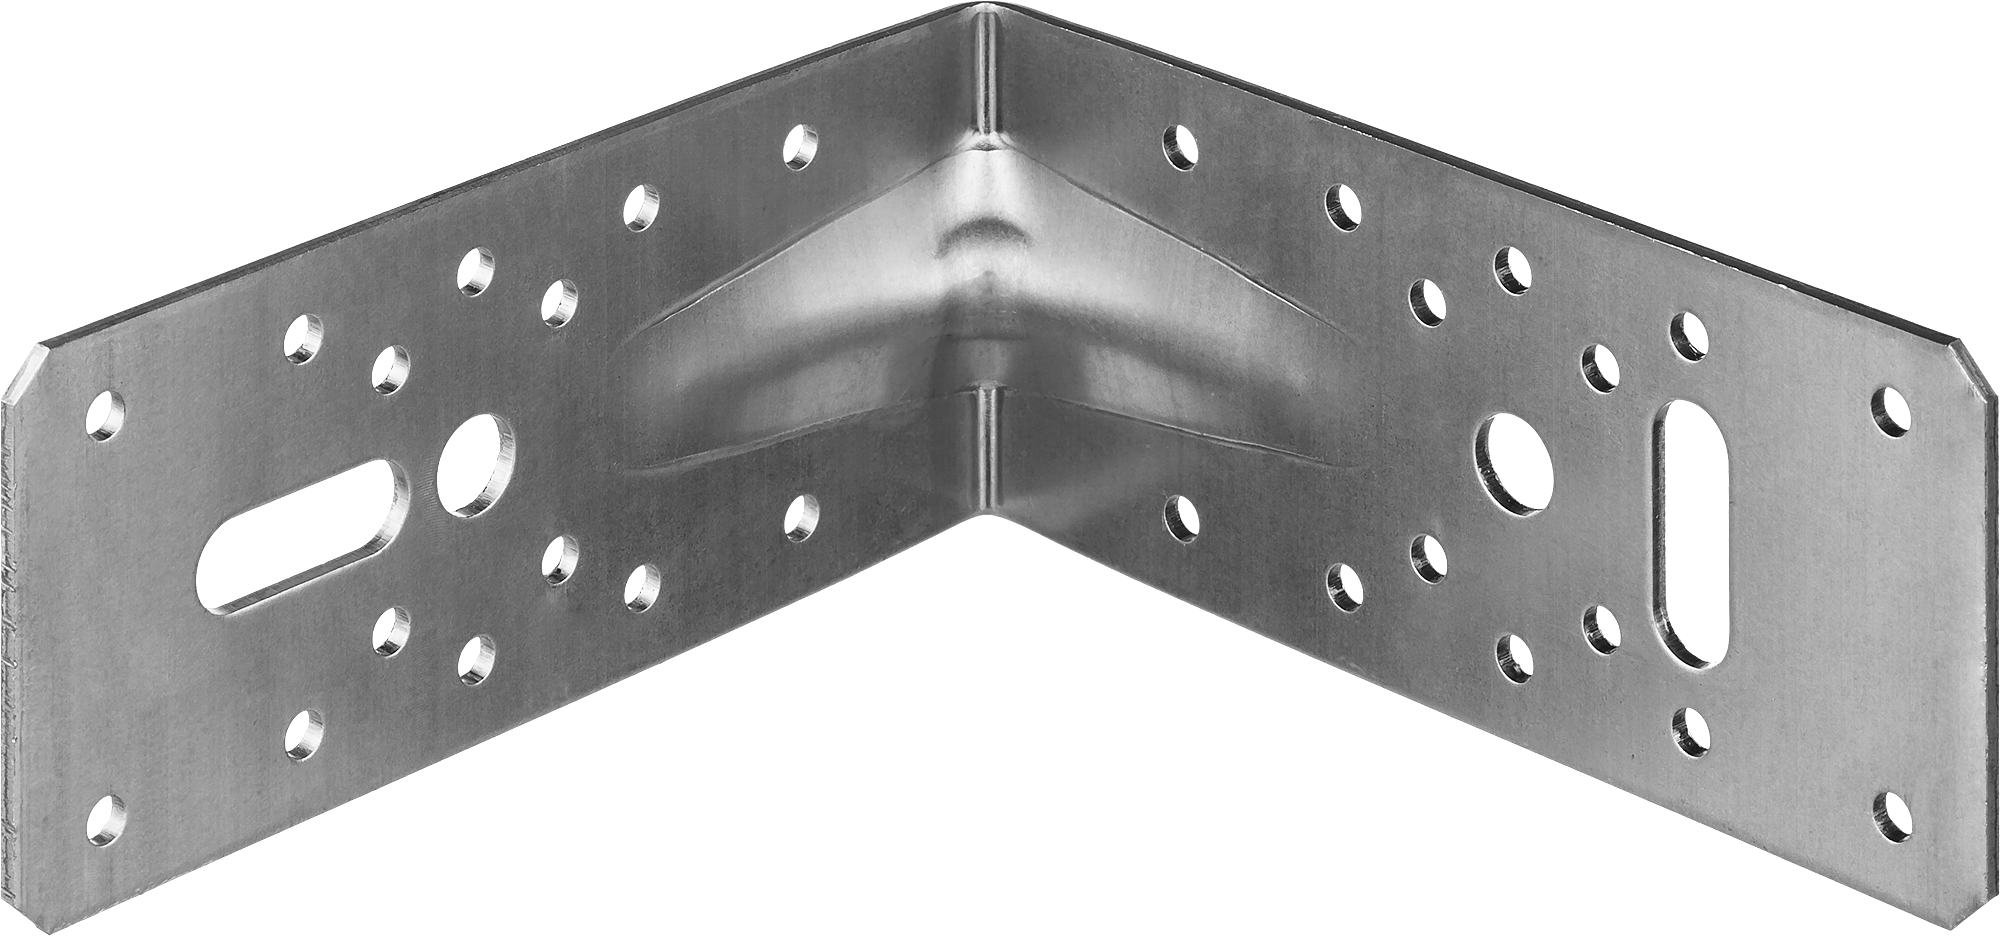 Уголок крепежный ЗУБР МАСТЕР УКУ-2.5, усиленный, 6.5 смx14.5 смx14.5 см, 2.5 мм, 1 шт. (31011-145)